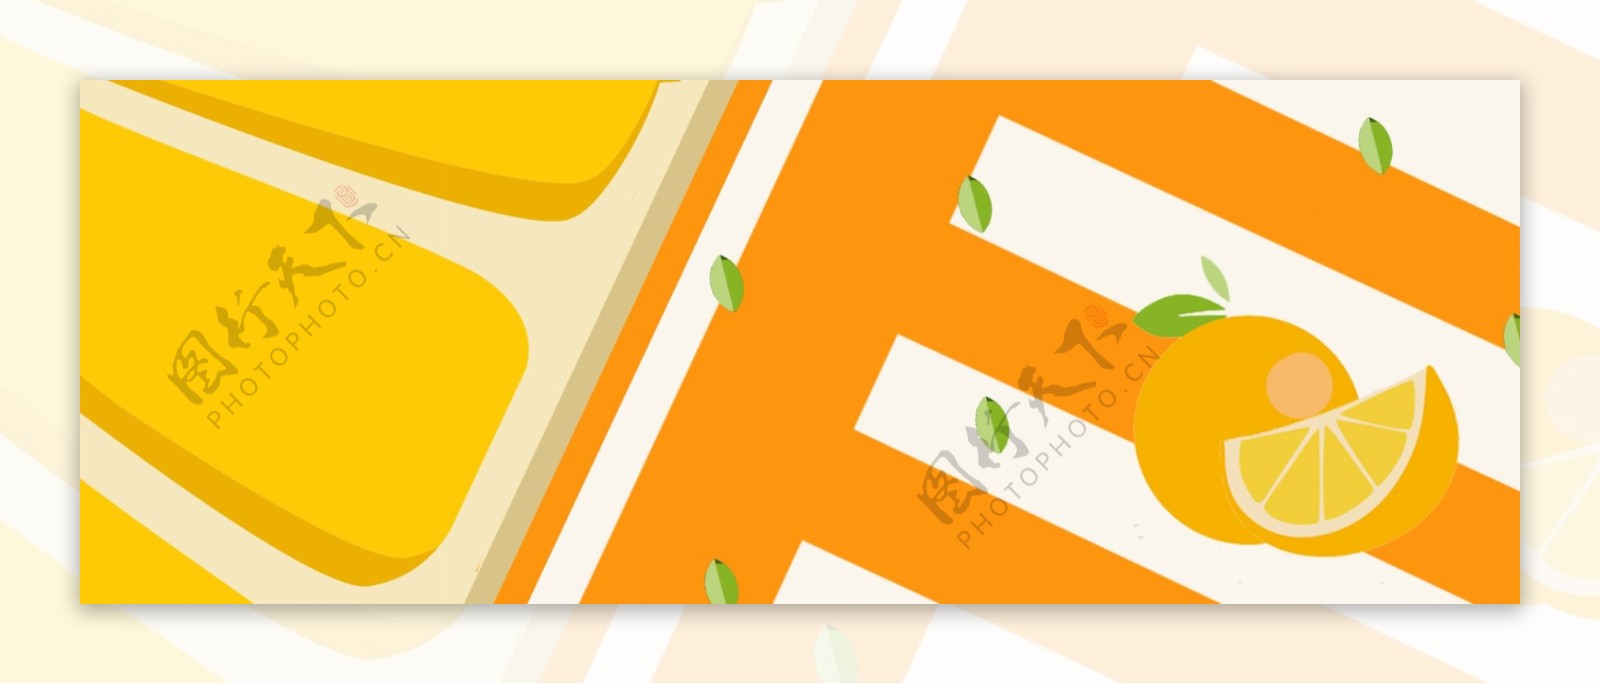 小清新橙黄色系橙子海报背景素材